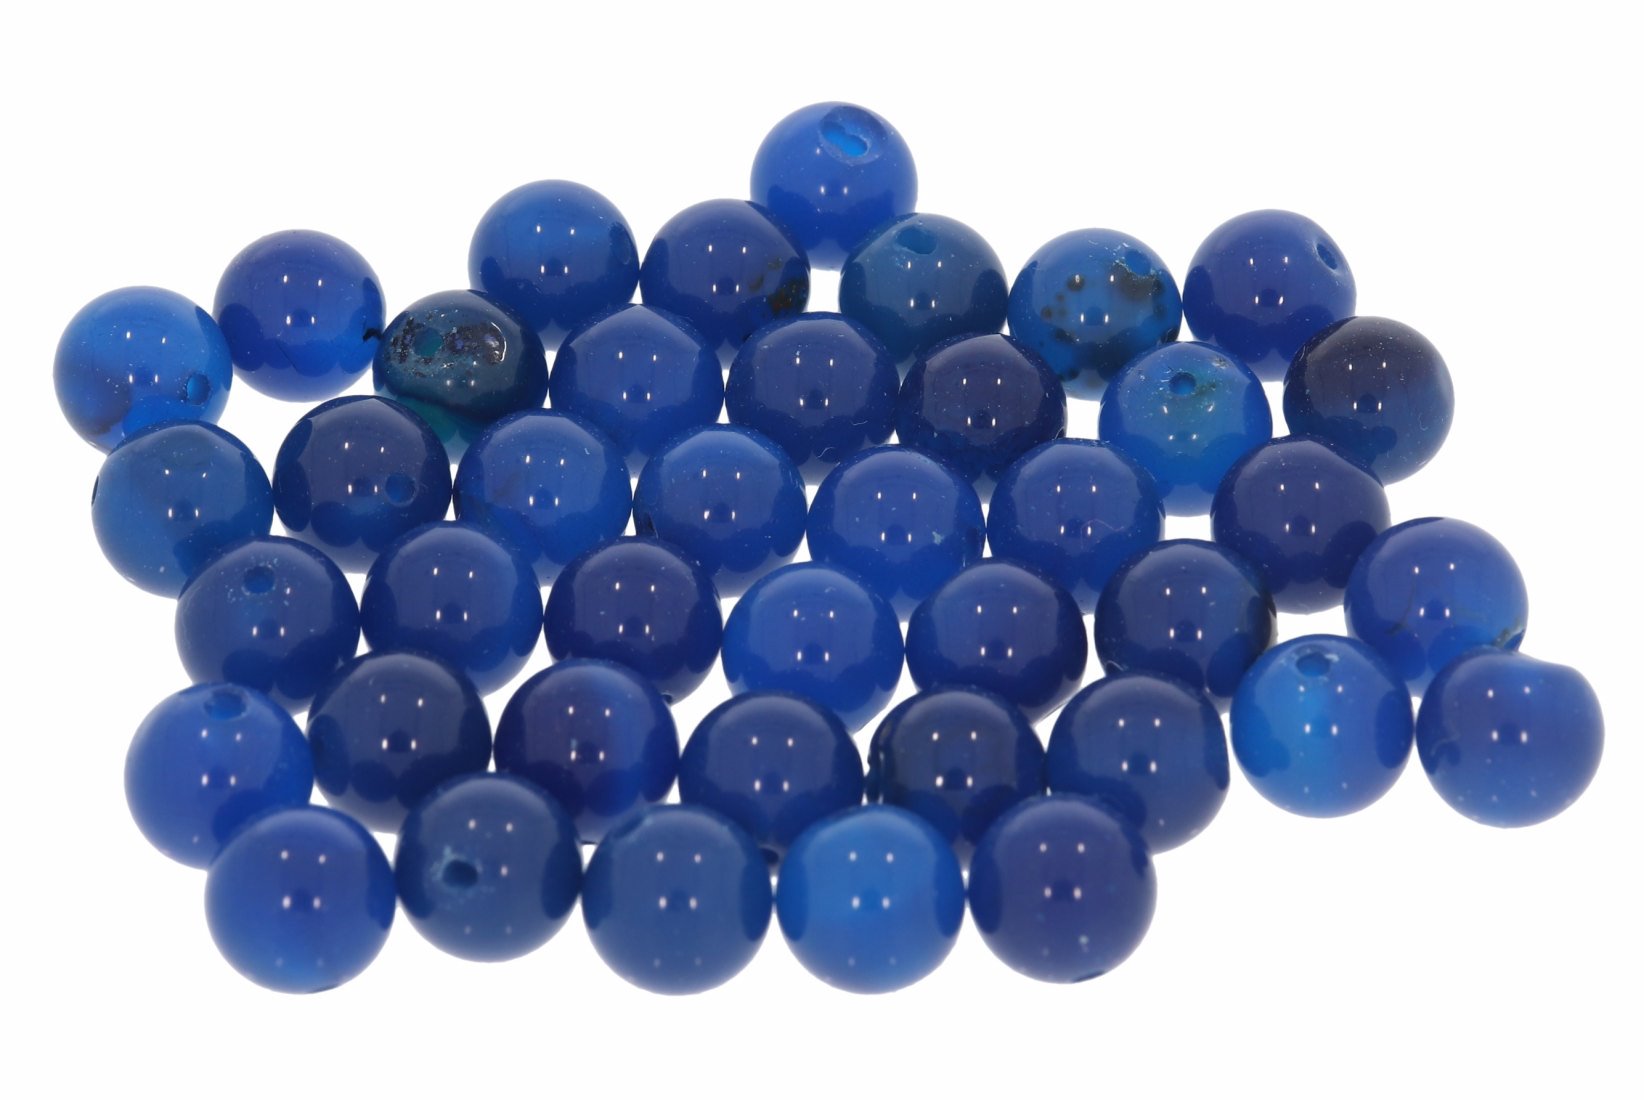 Achat blau einfarbig 8S206 - 8mm Edelstein Kugel 10 Stück